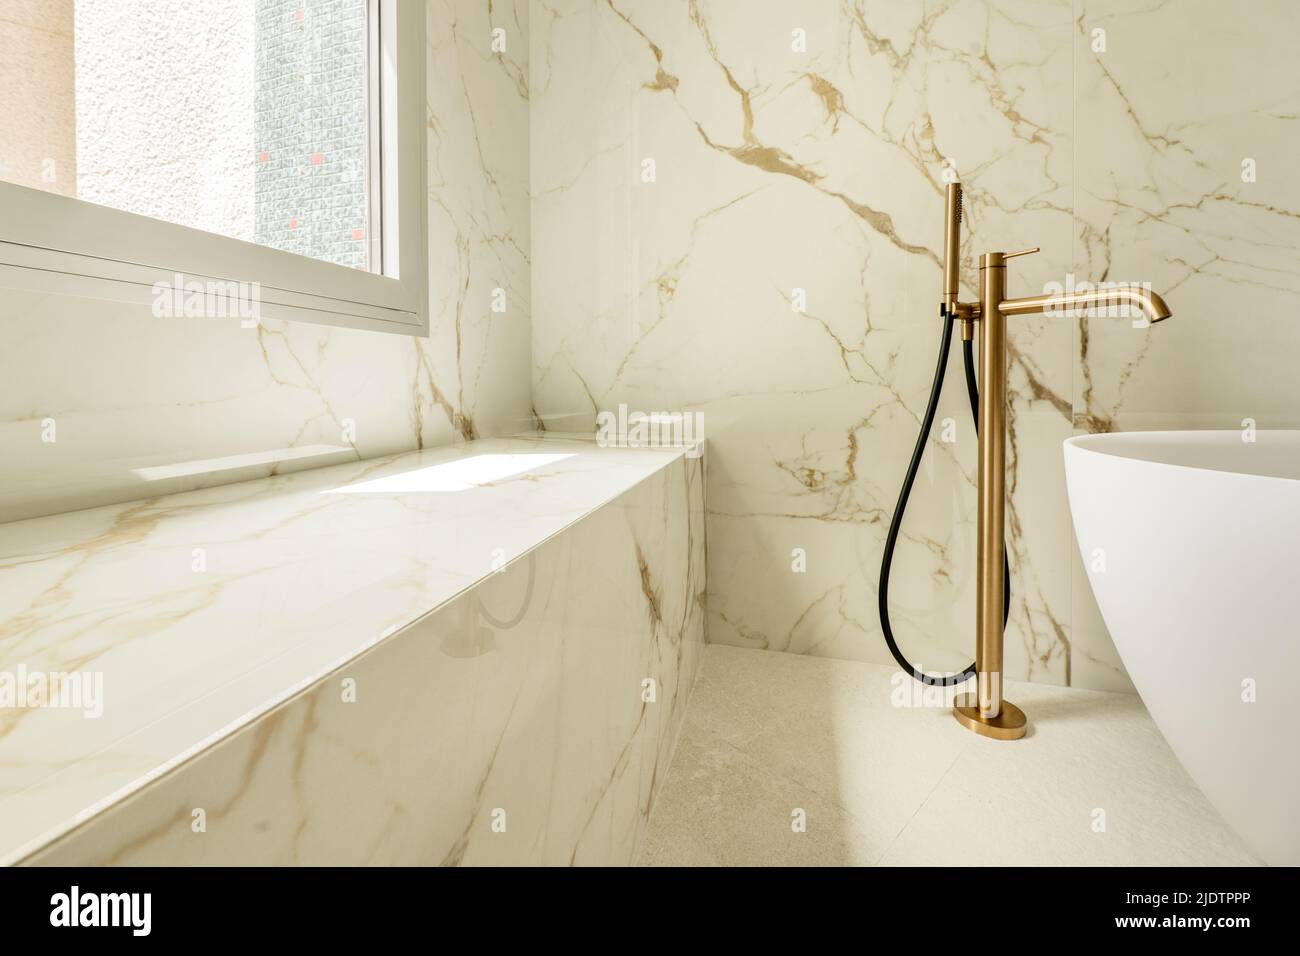 Detalle de un baño con paredes de mármol, un banco continuo hecho del mismo  material, grifos de latón y una bañera blanca separada Fotografía de stock  - Alamy